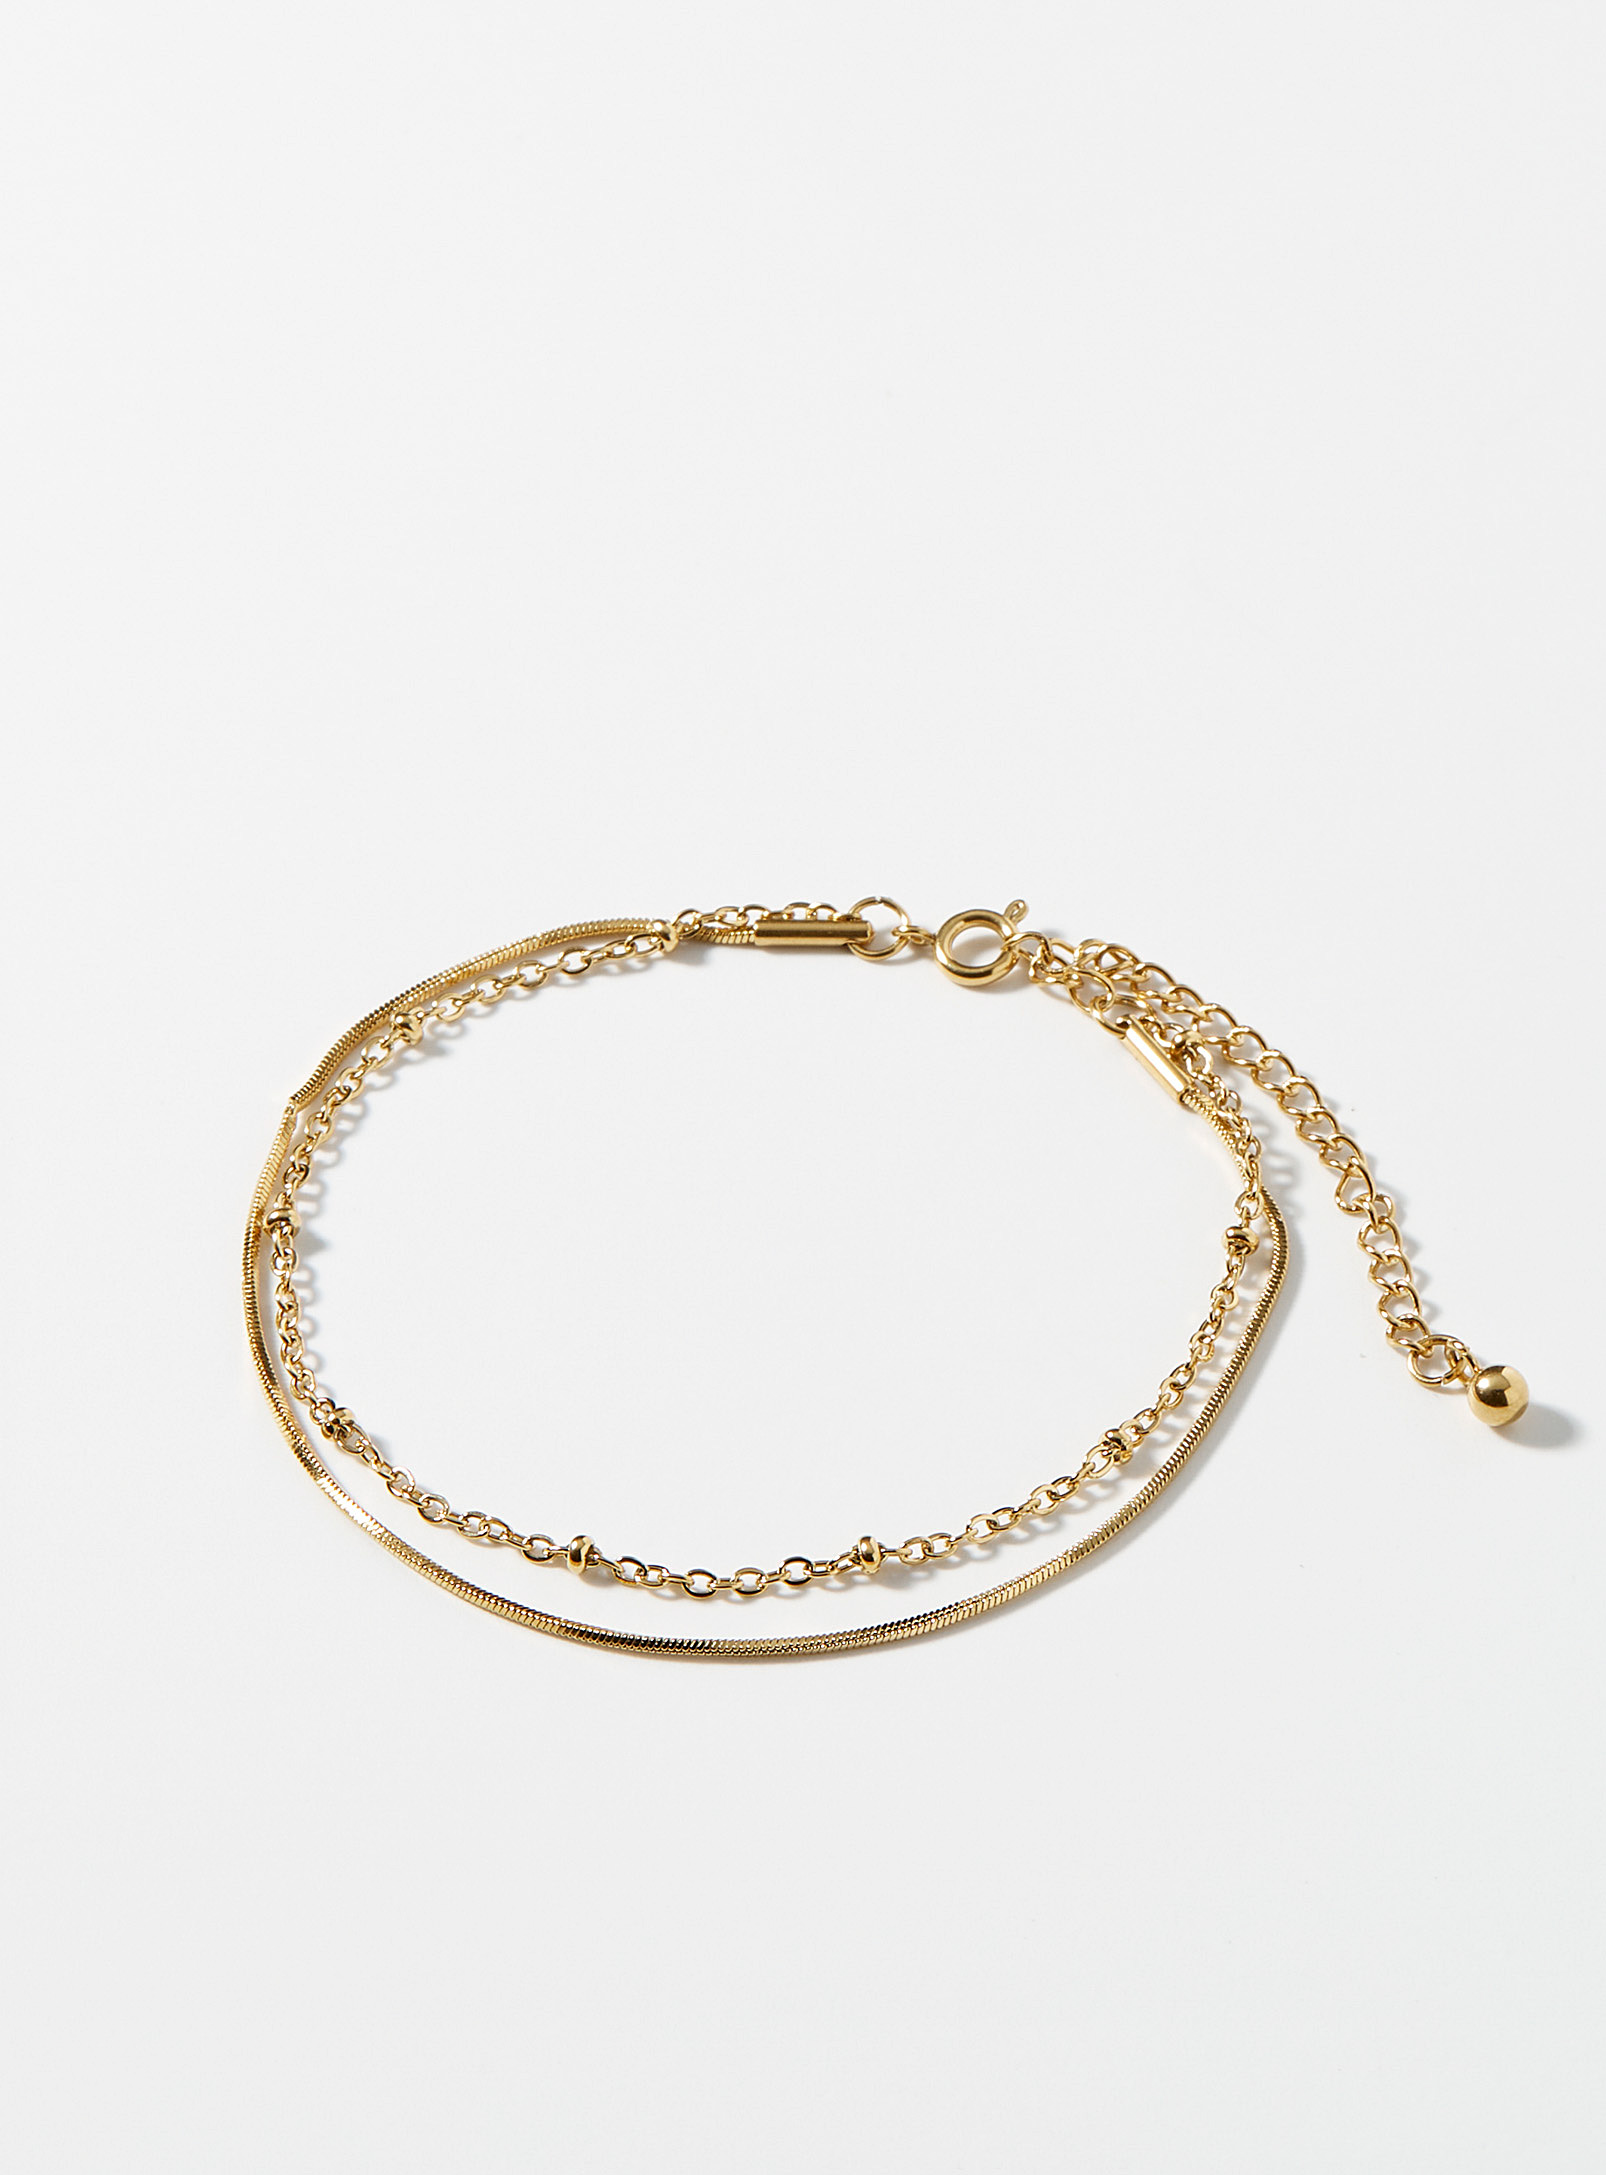 Simons - Le bracelet double chaîne dorée